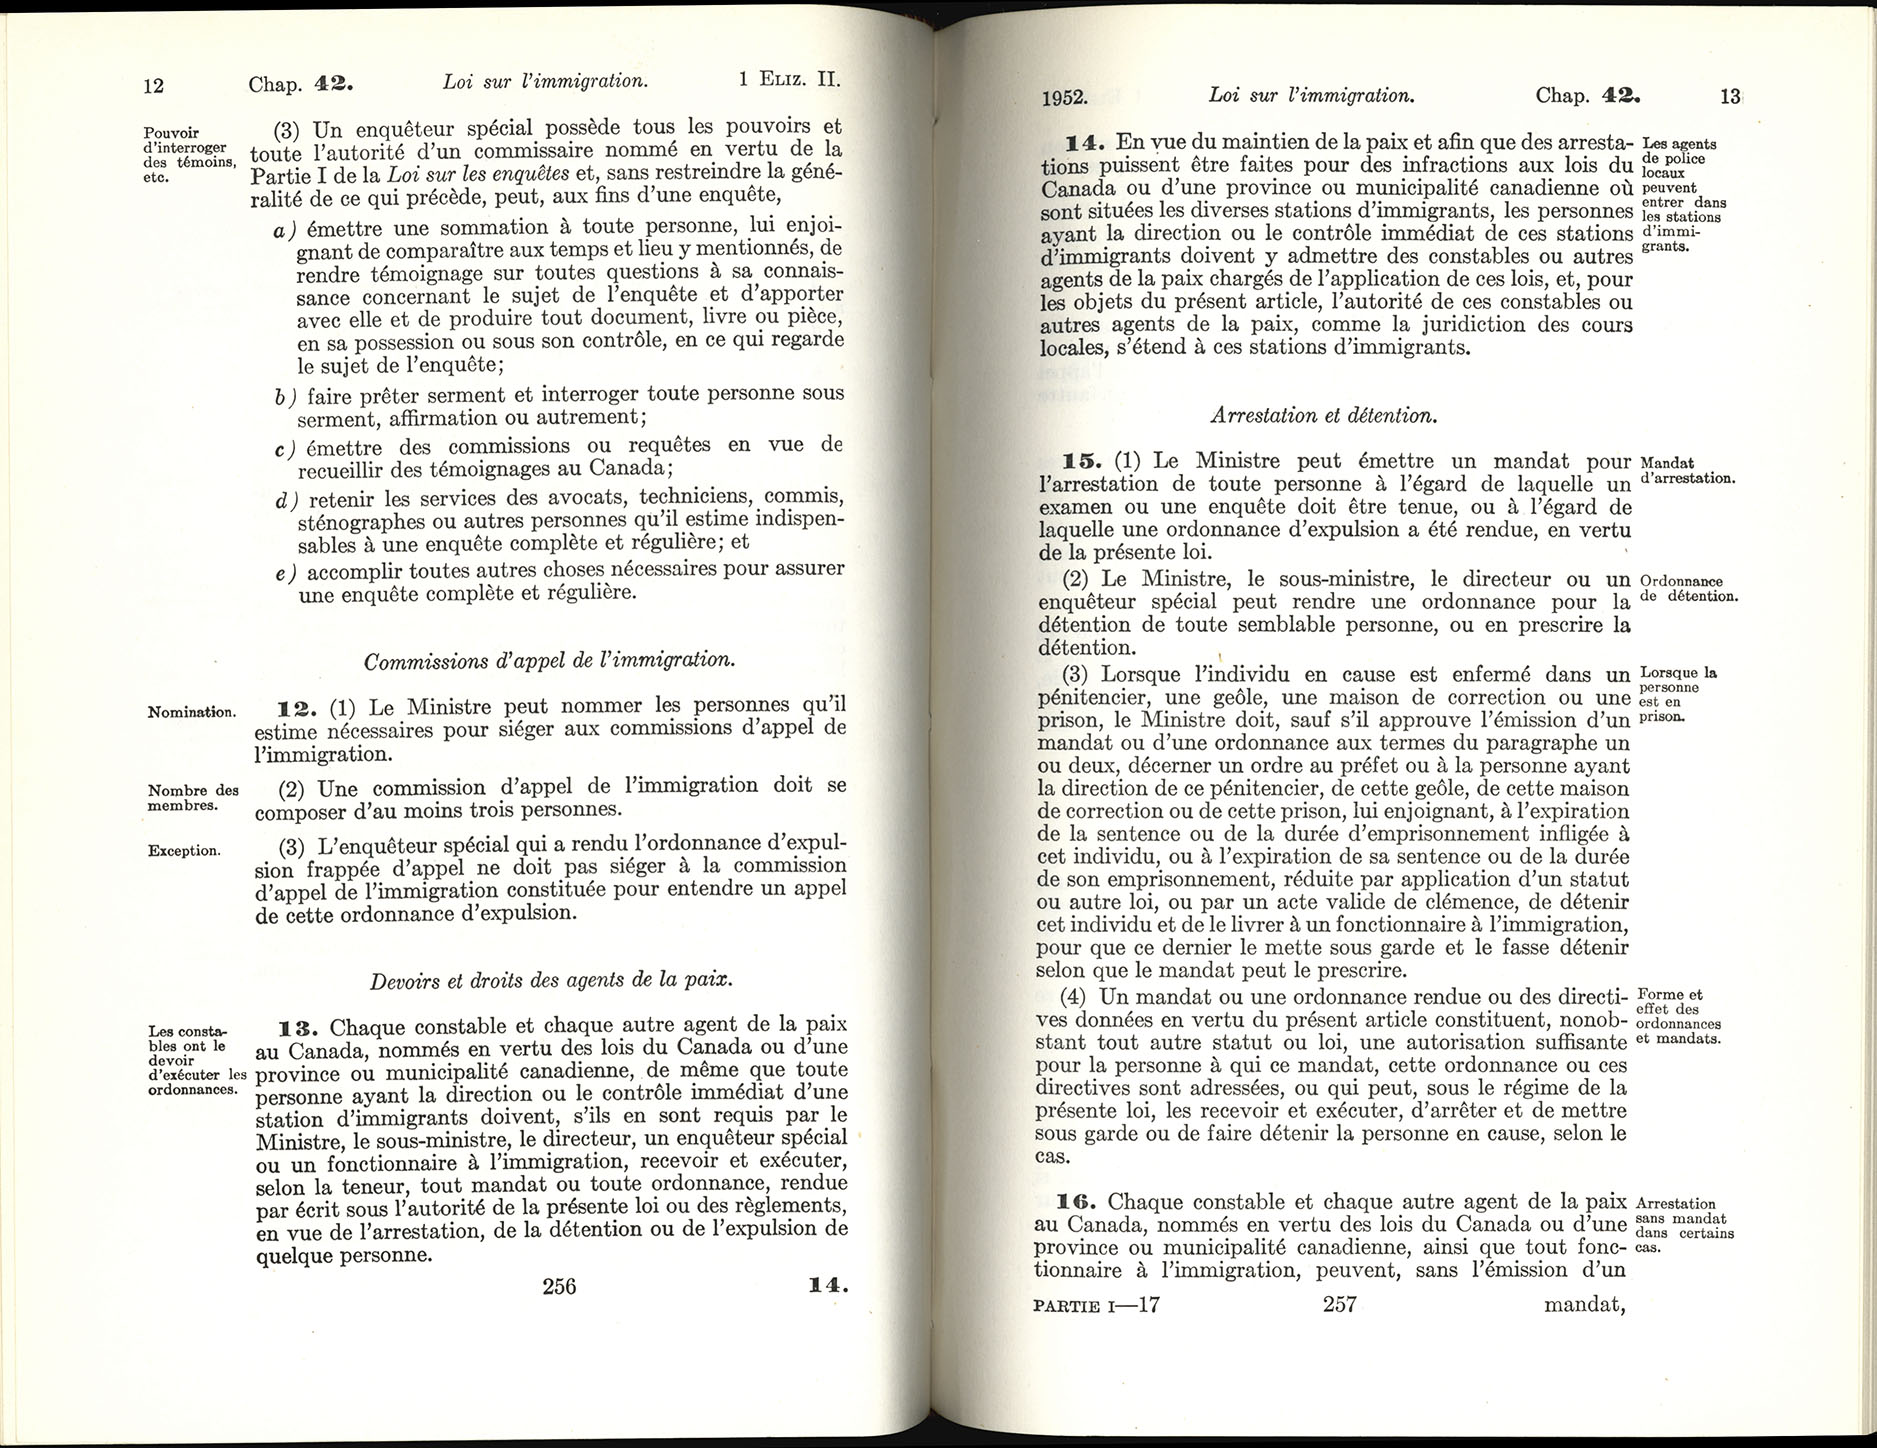 Chap 42 Page 256, 257 Loi sur l’immigration, 1952